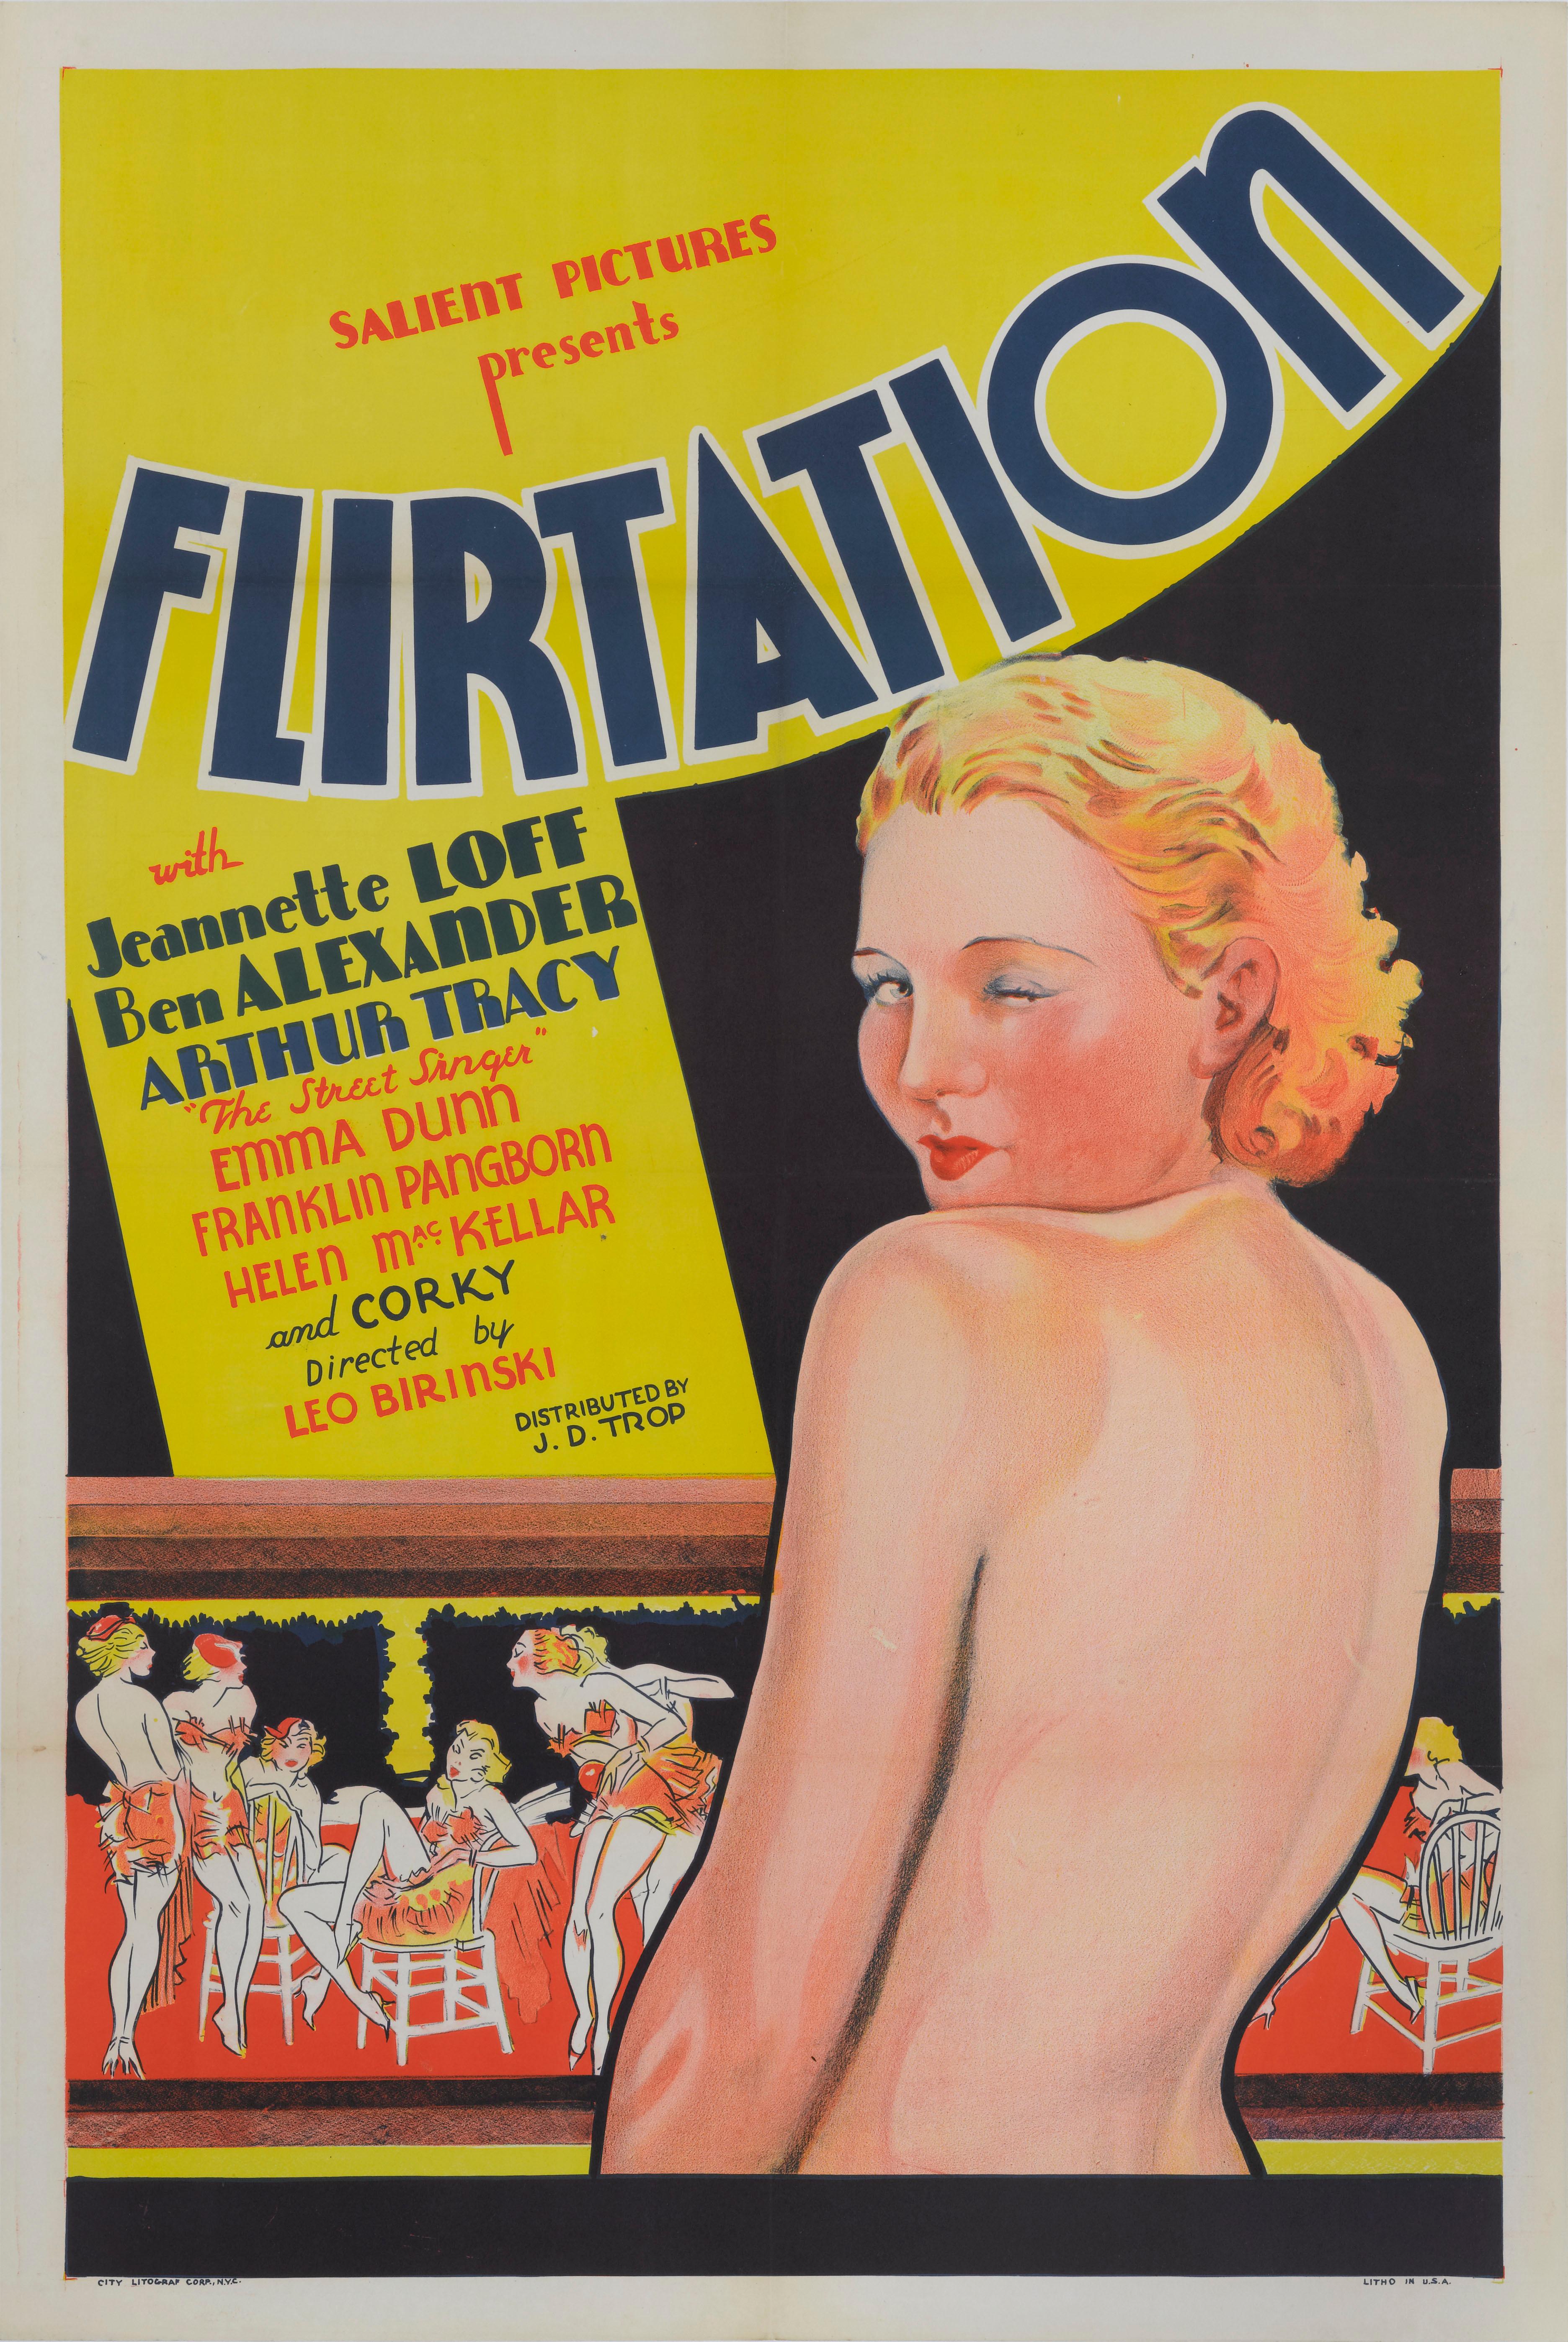 Affiche de film américaine originale pour la comédie musicale Romance de 1934.
Cette affiche coquine montrant une Jeanette Loff nue s'est glissée dans le décor avant que le code Hays (directives morales pour les films) ne soit pleinement appliqué